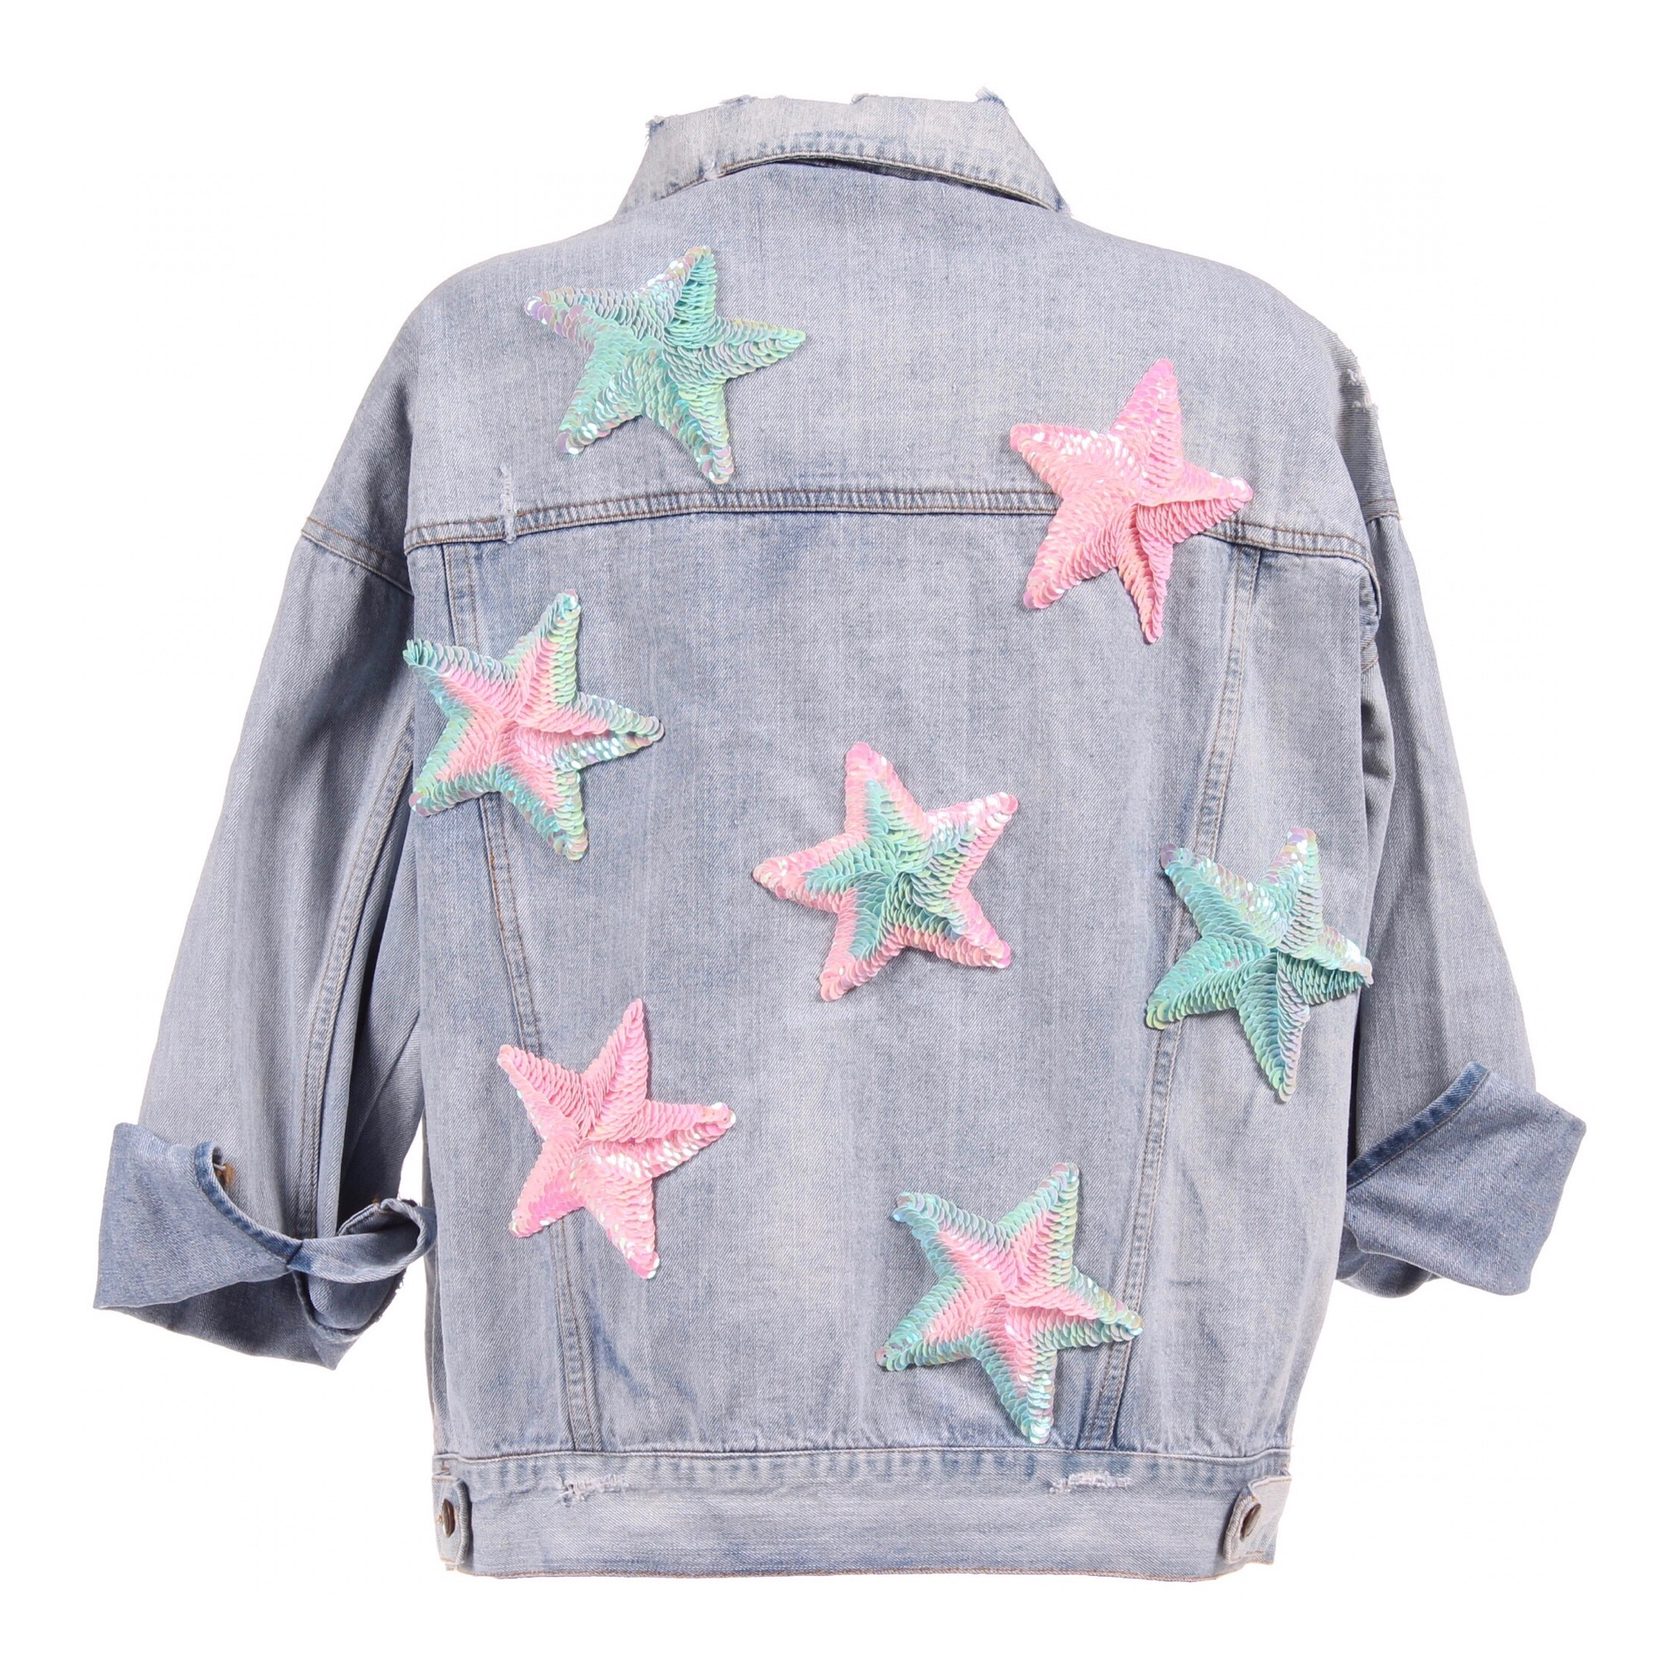 Джинсовая курточка &quot; Розовые звезды&quot; вручную расшитая пайетками, вид сзади